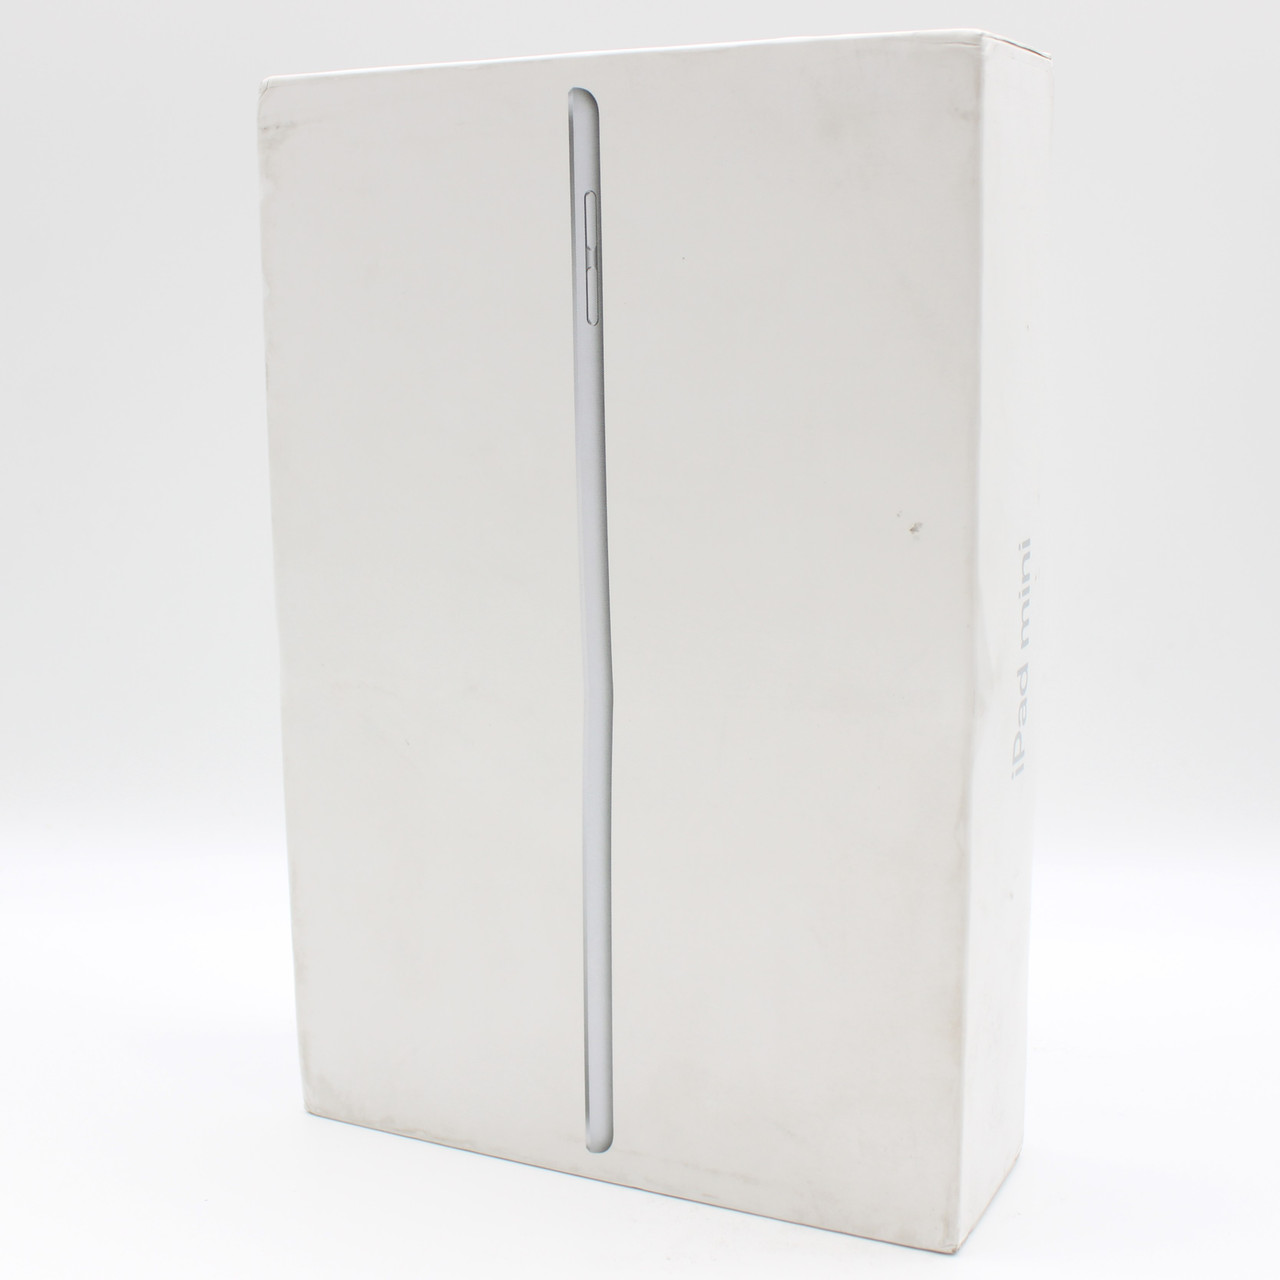 Apple iPad Mini (5th Gen) 7.9" 64 GB Wi-Fi - Silver - New Open Box